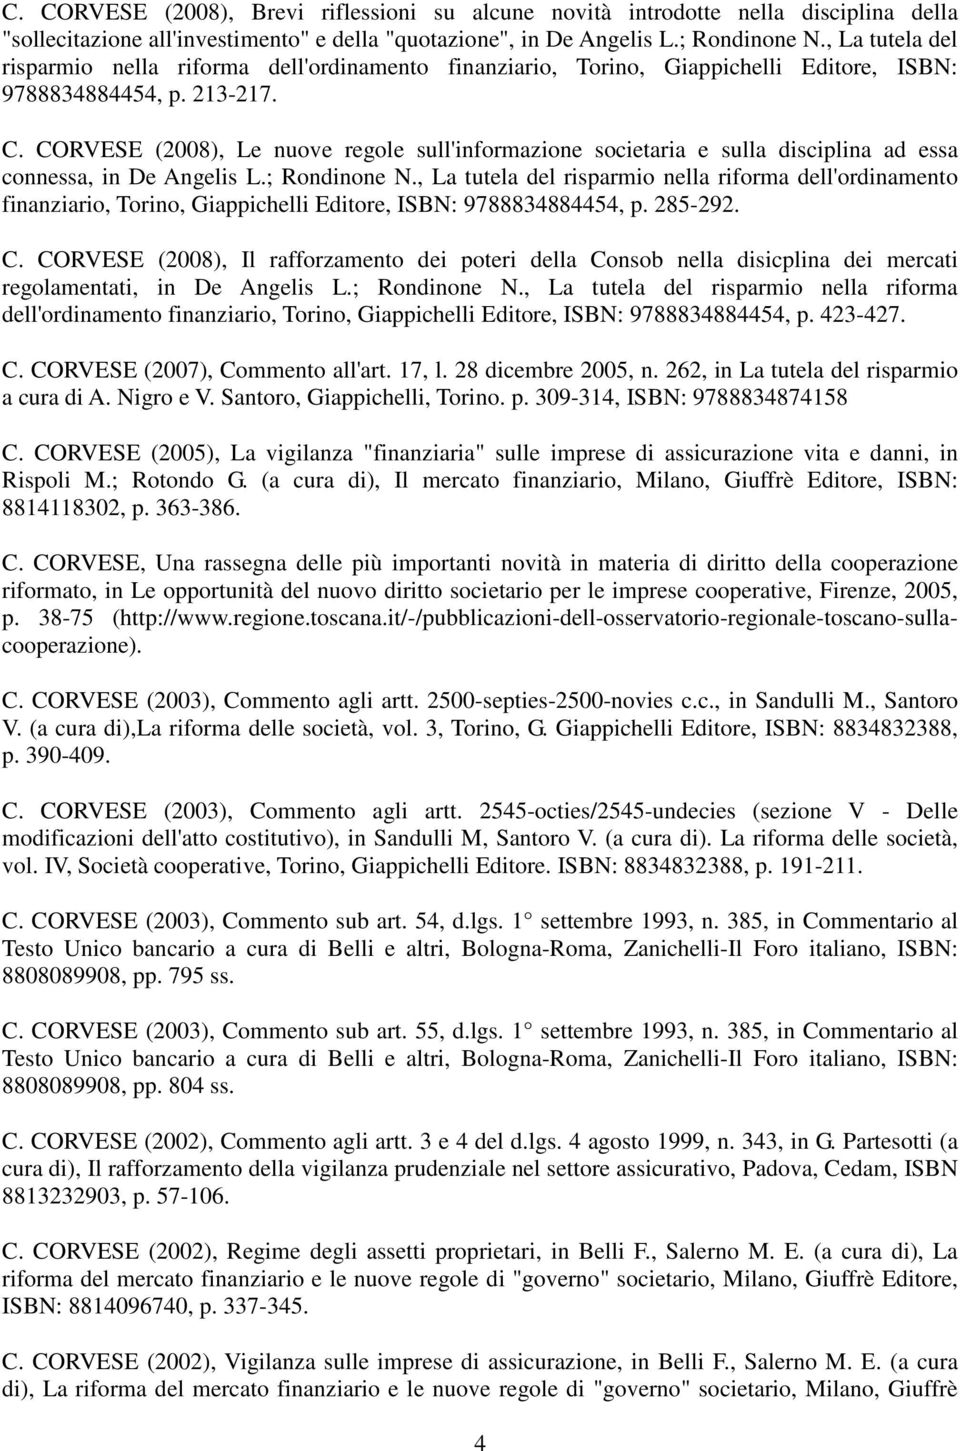 CORVESE (2008), Le nuove regole sull'informazione societaria e sulla disciplina ad essa connessa, in De Angelis L.; Rondinone N.